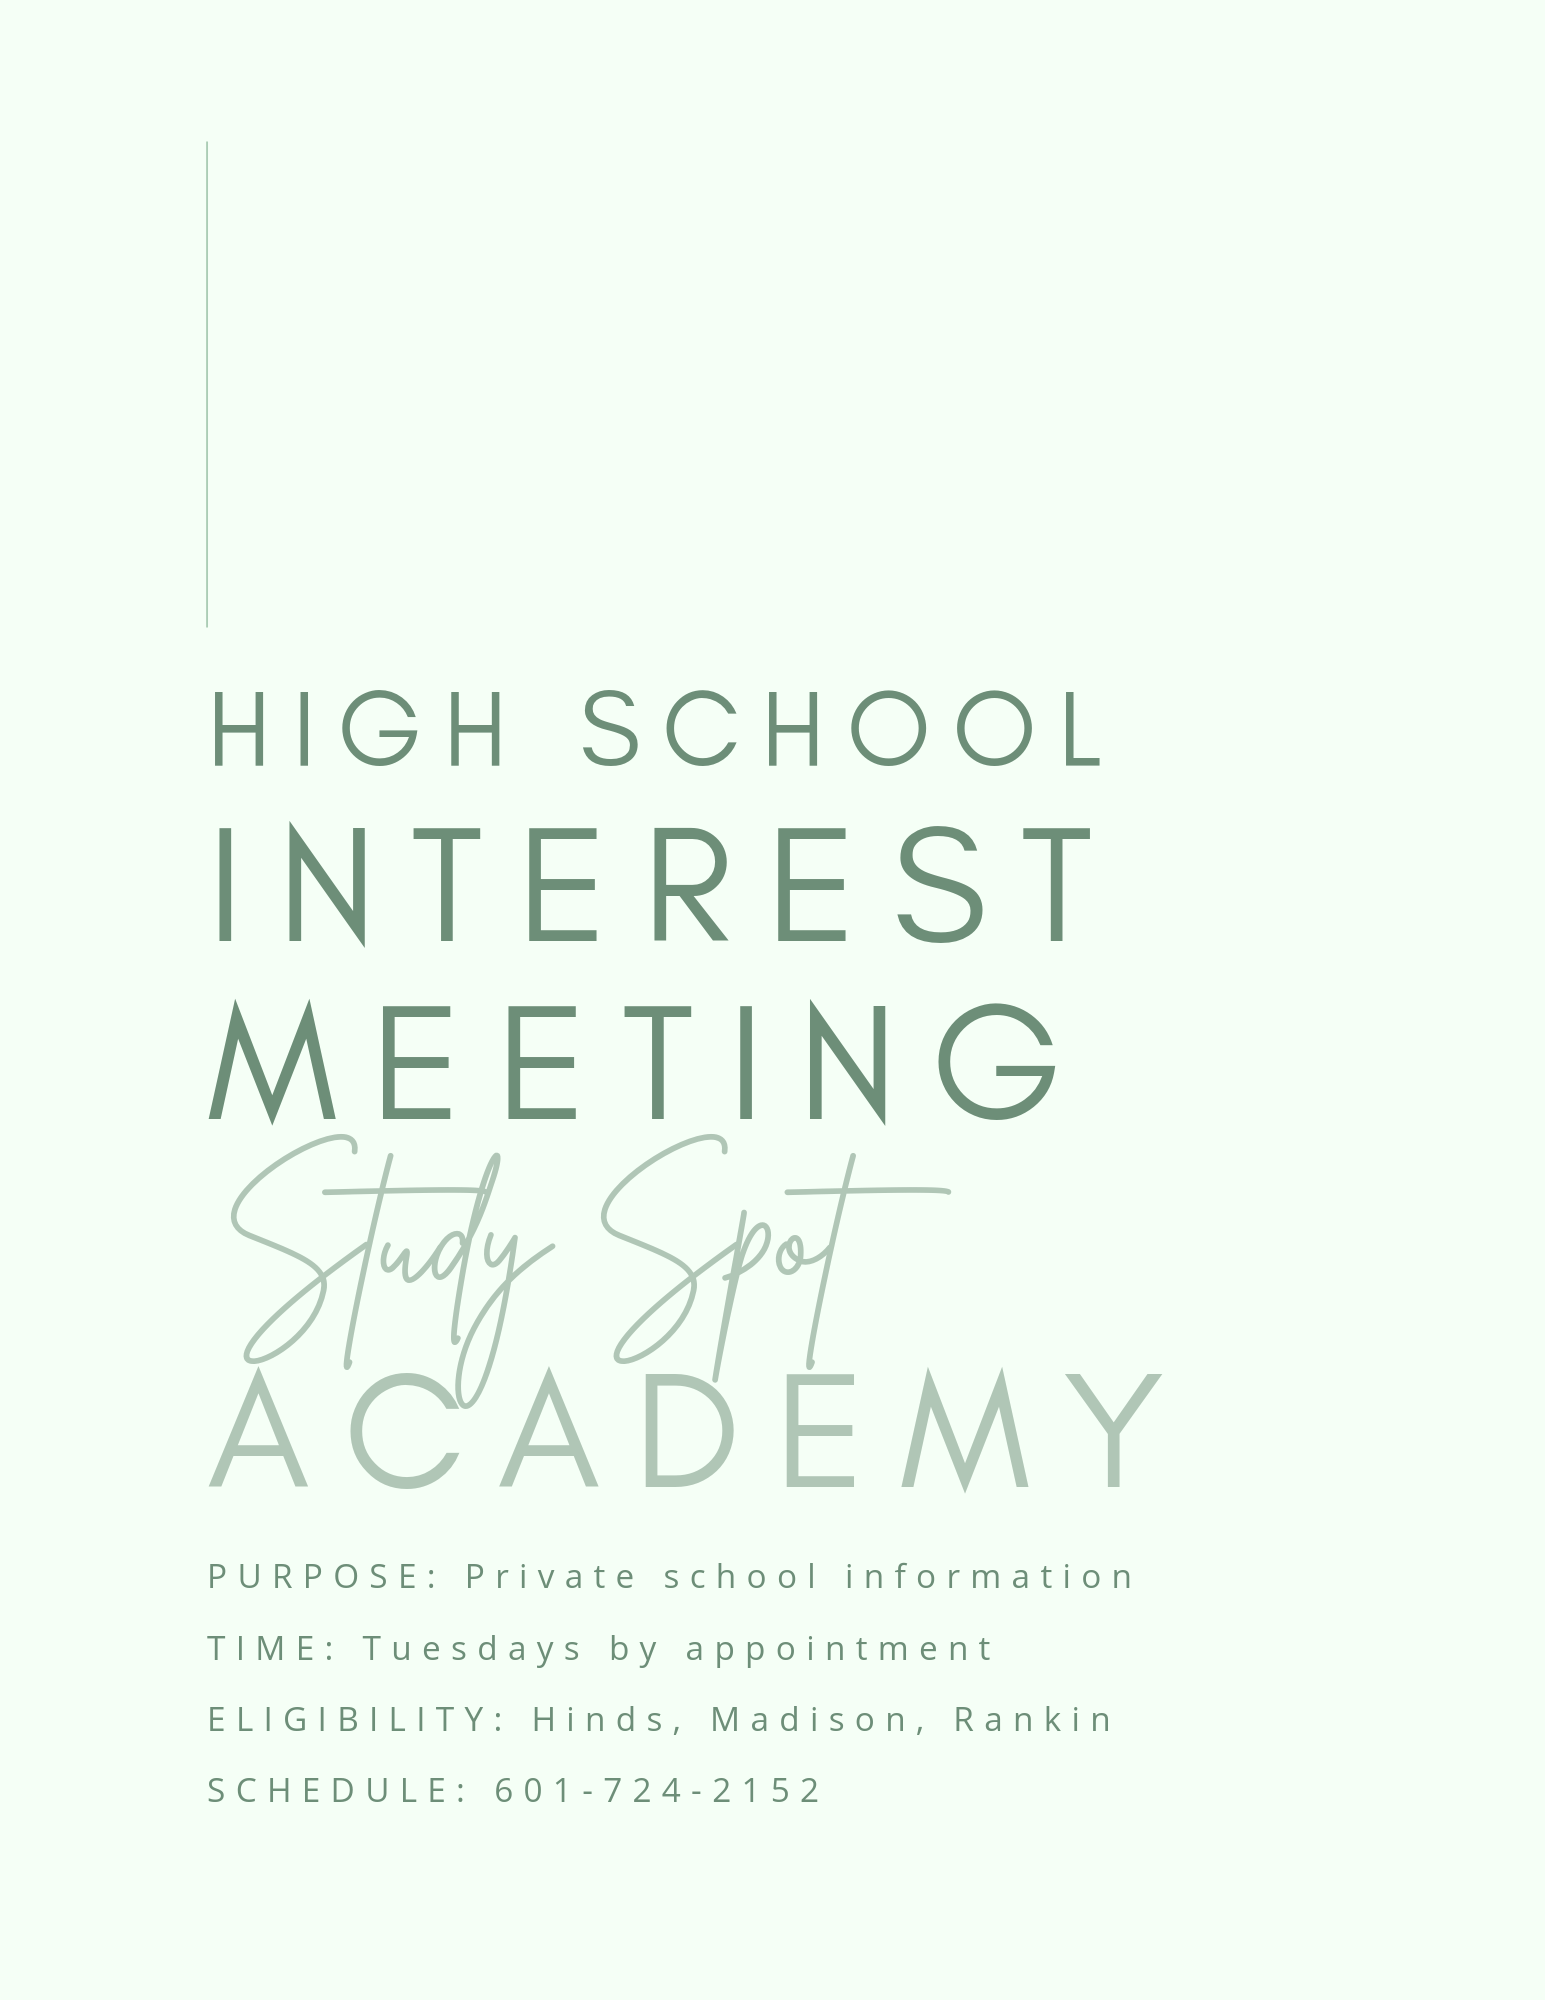 Study Spot Academy High School Interest Meeting (Tuesdays) 